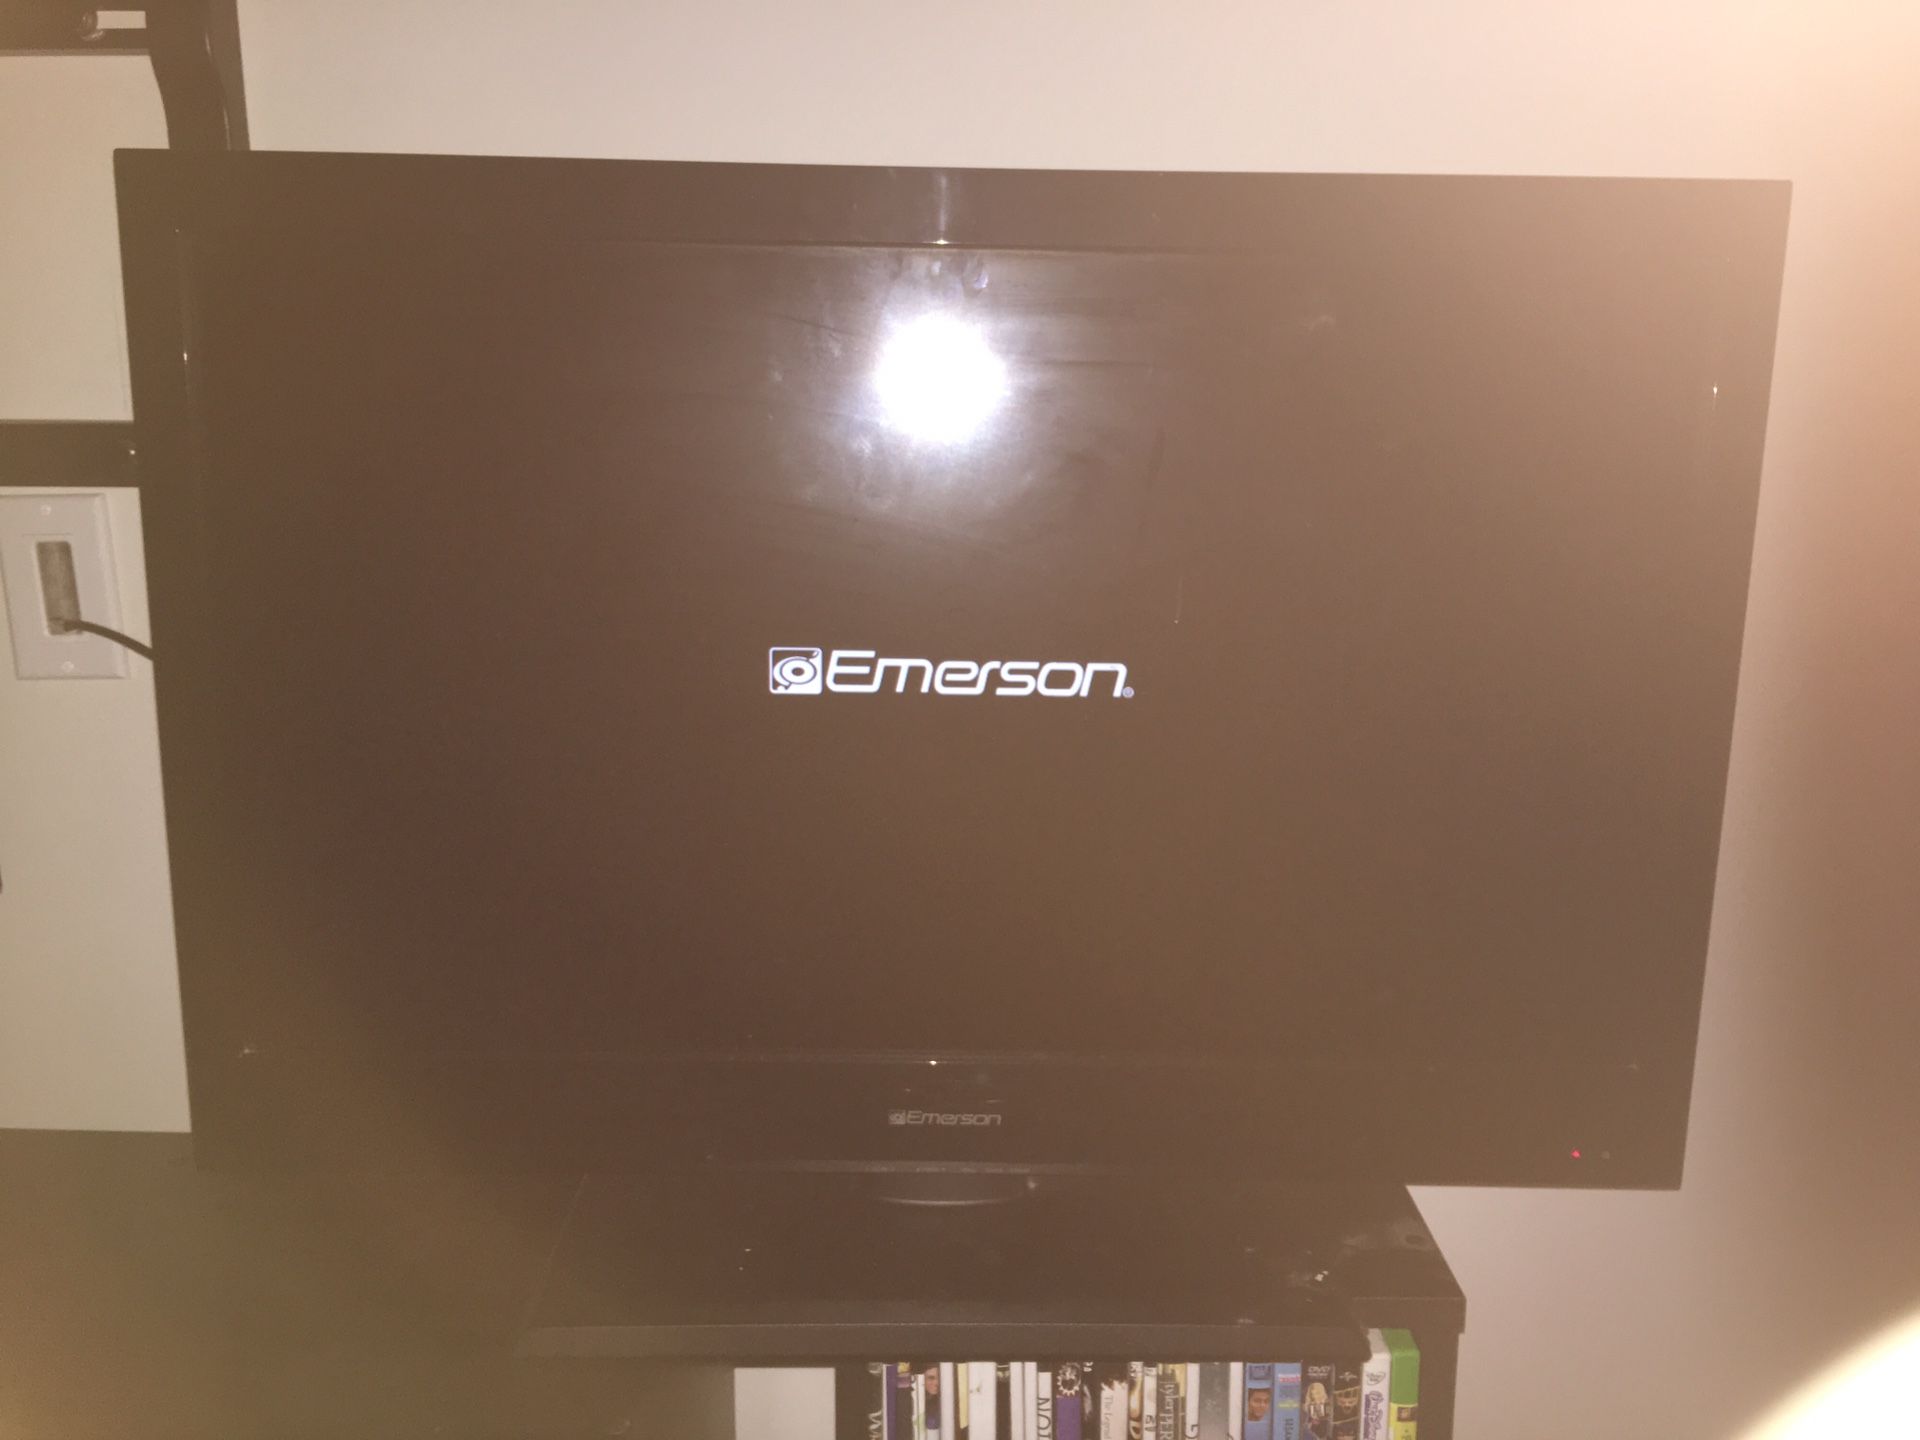 32 inch Emerson tv with original remote